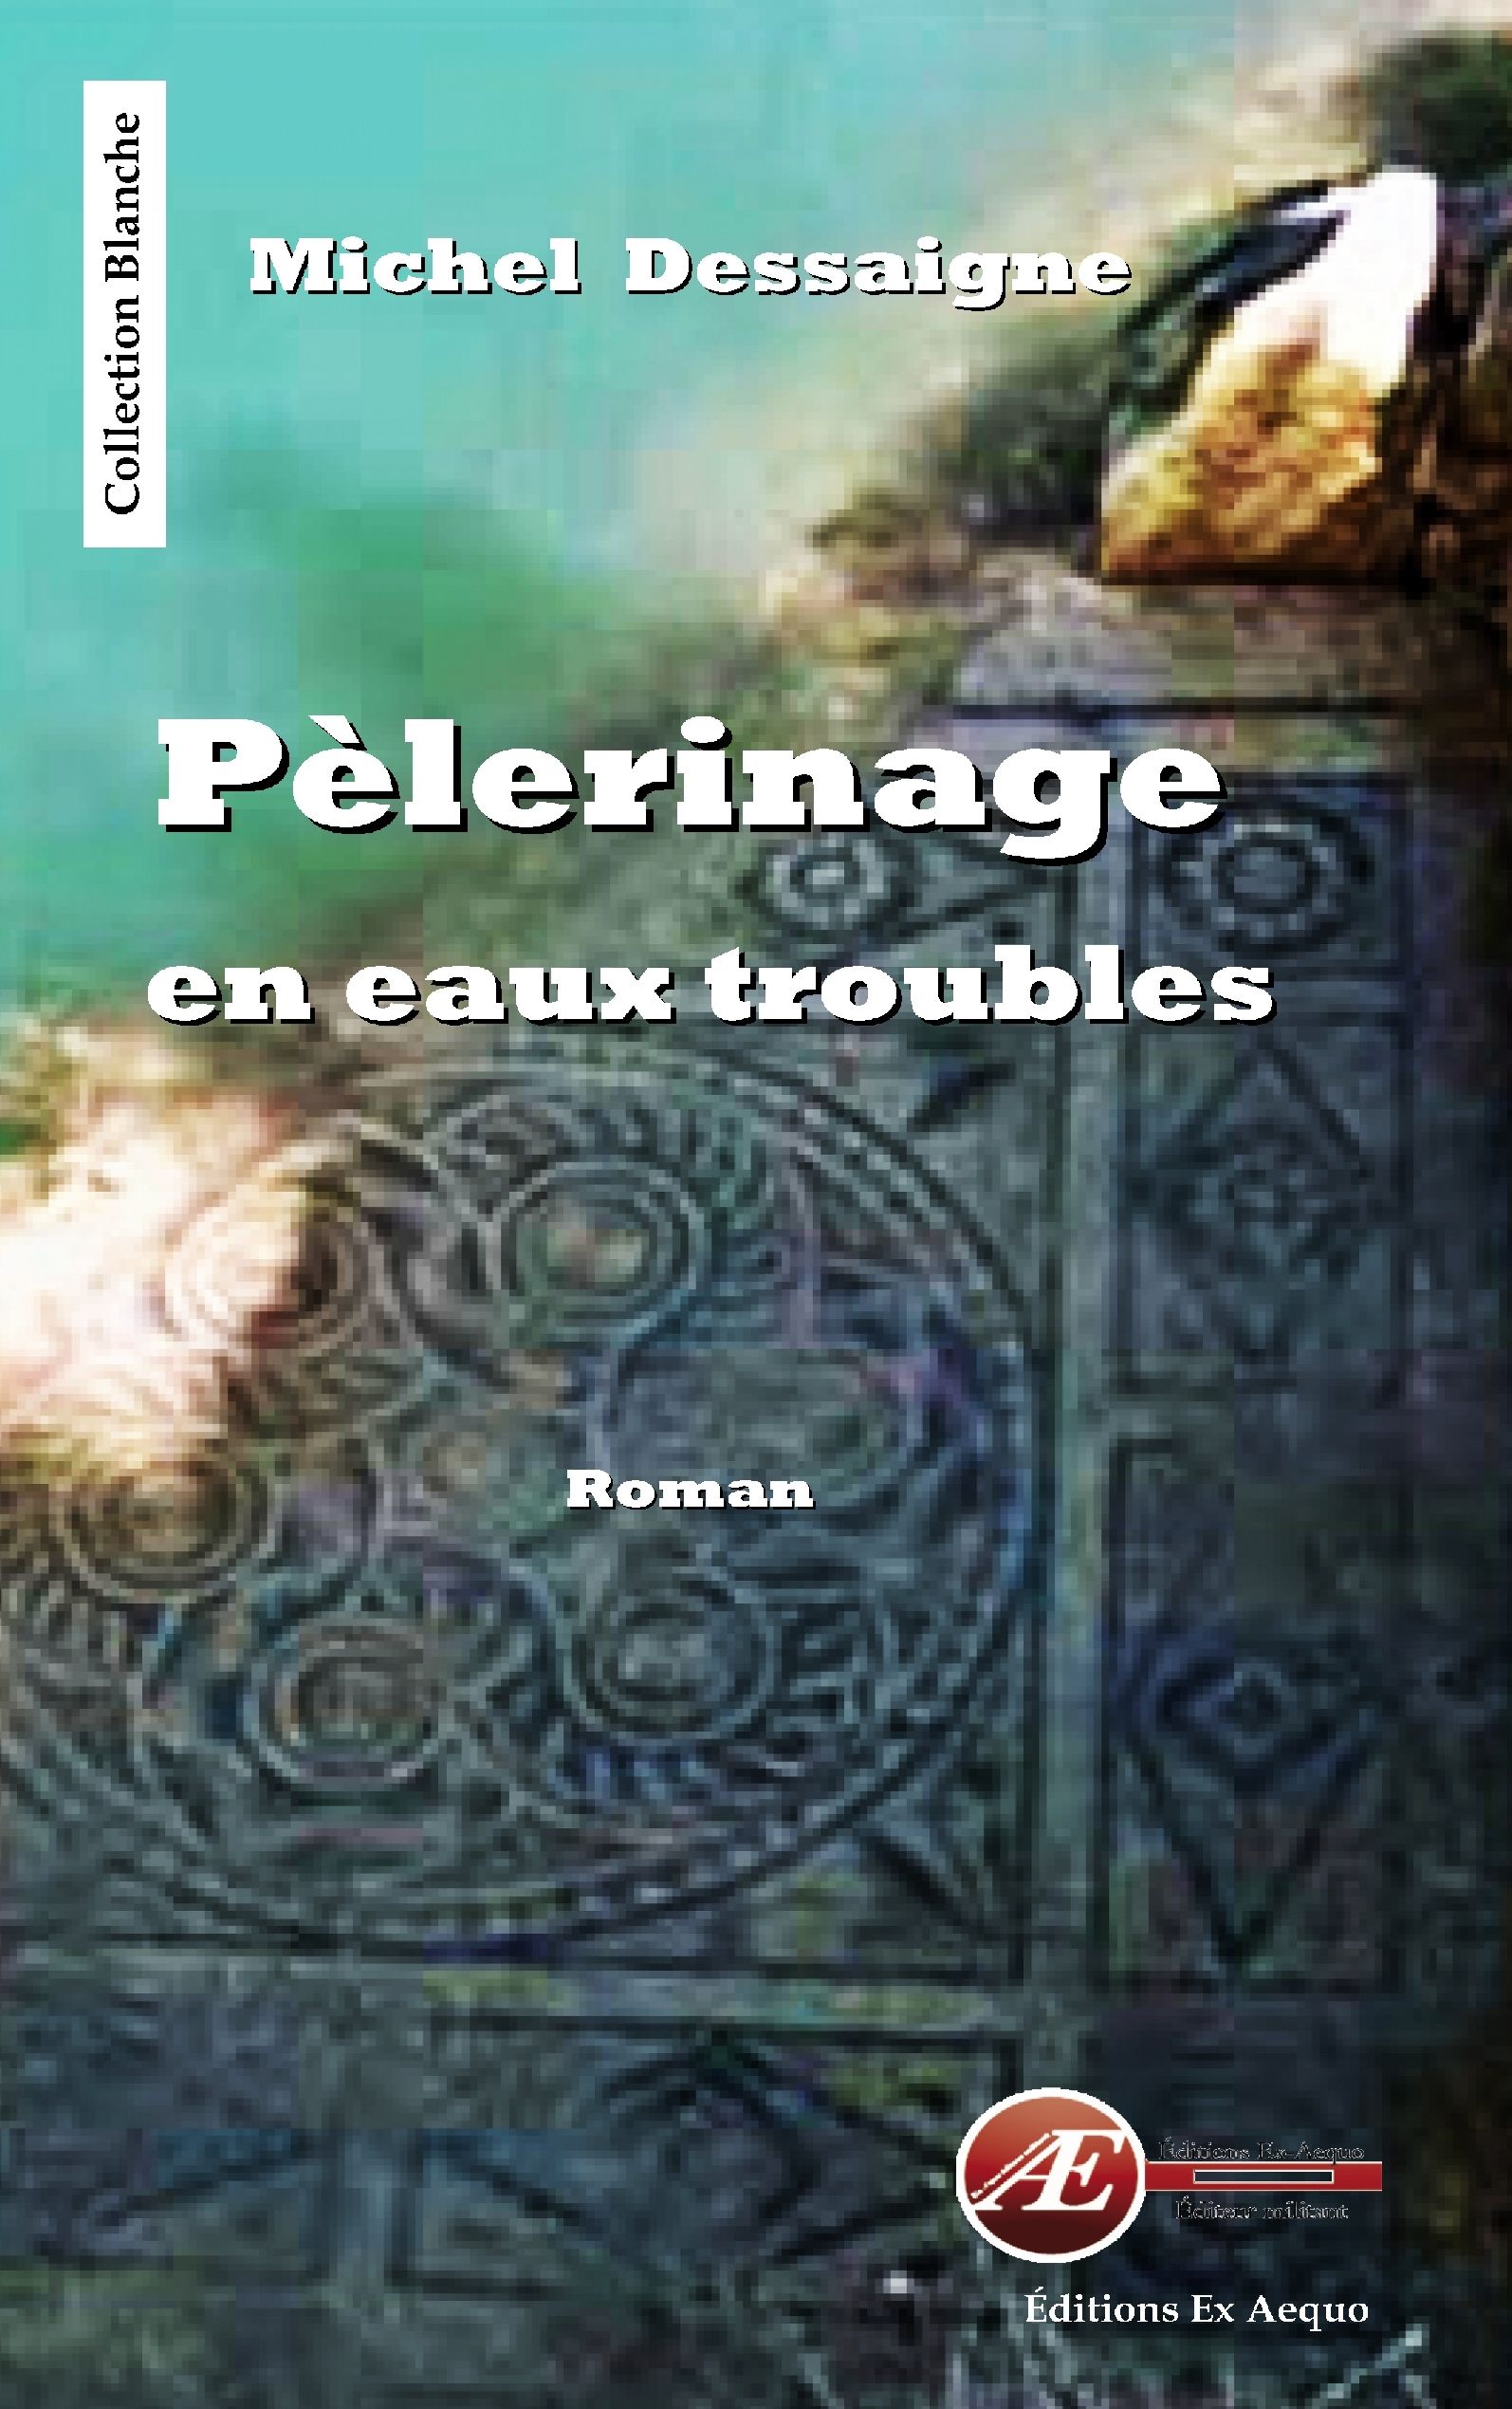 You are currently viewing Pèlerinage en eaux troubles, de Michel Dessaigne